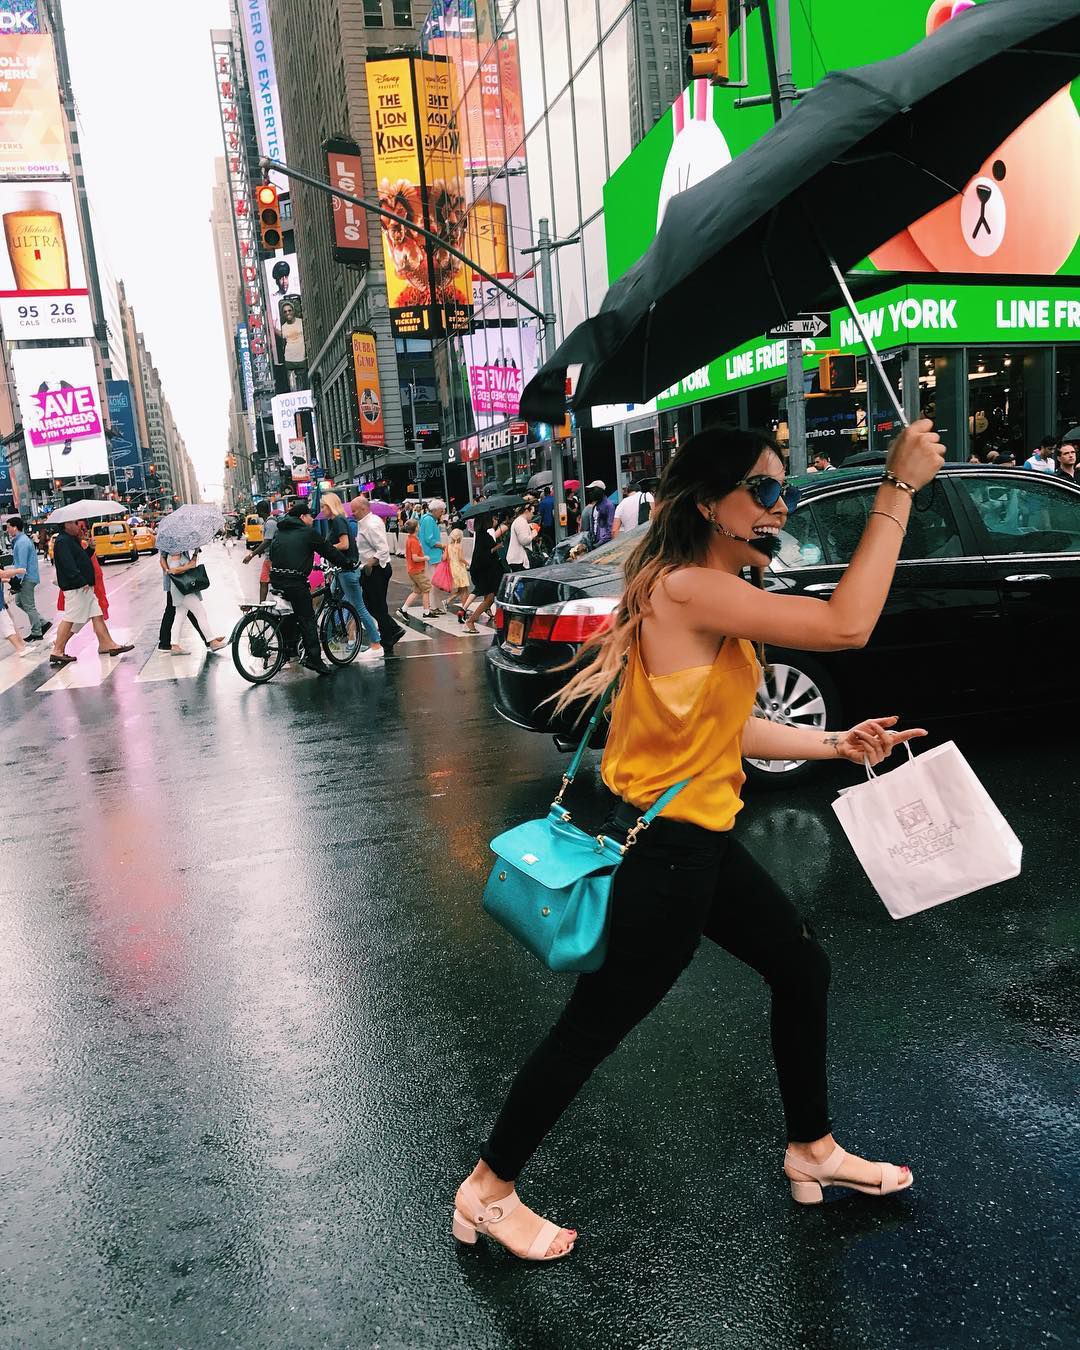 Danna Paola paseando por Times Square mientras luce su exclusivo Sicily de Dolce & Gabanna (Foto: Instagram @DannaPaola)